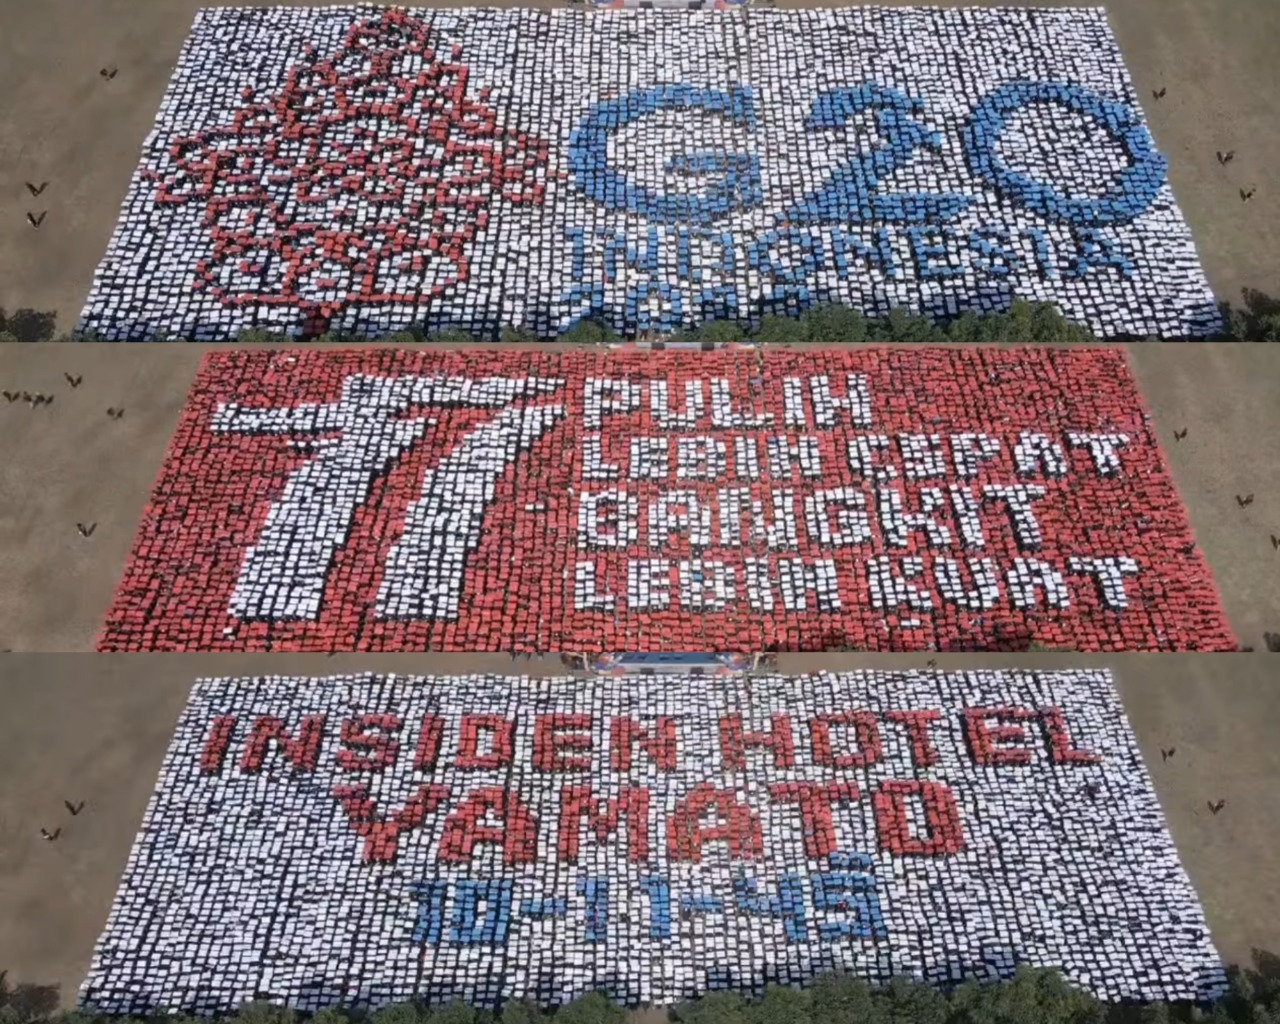 Konfigurasi mozaik pola G20, Dirgahayu ke-77 Kemerdekaan Indonesia, dan Insiden Hotel Yamato oleh para mahasiswa baru ITS yang berhasil pecahkan rekor MURI di Taman Alumni ITS